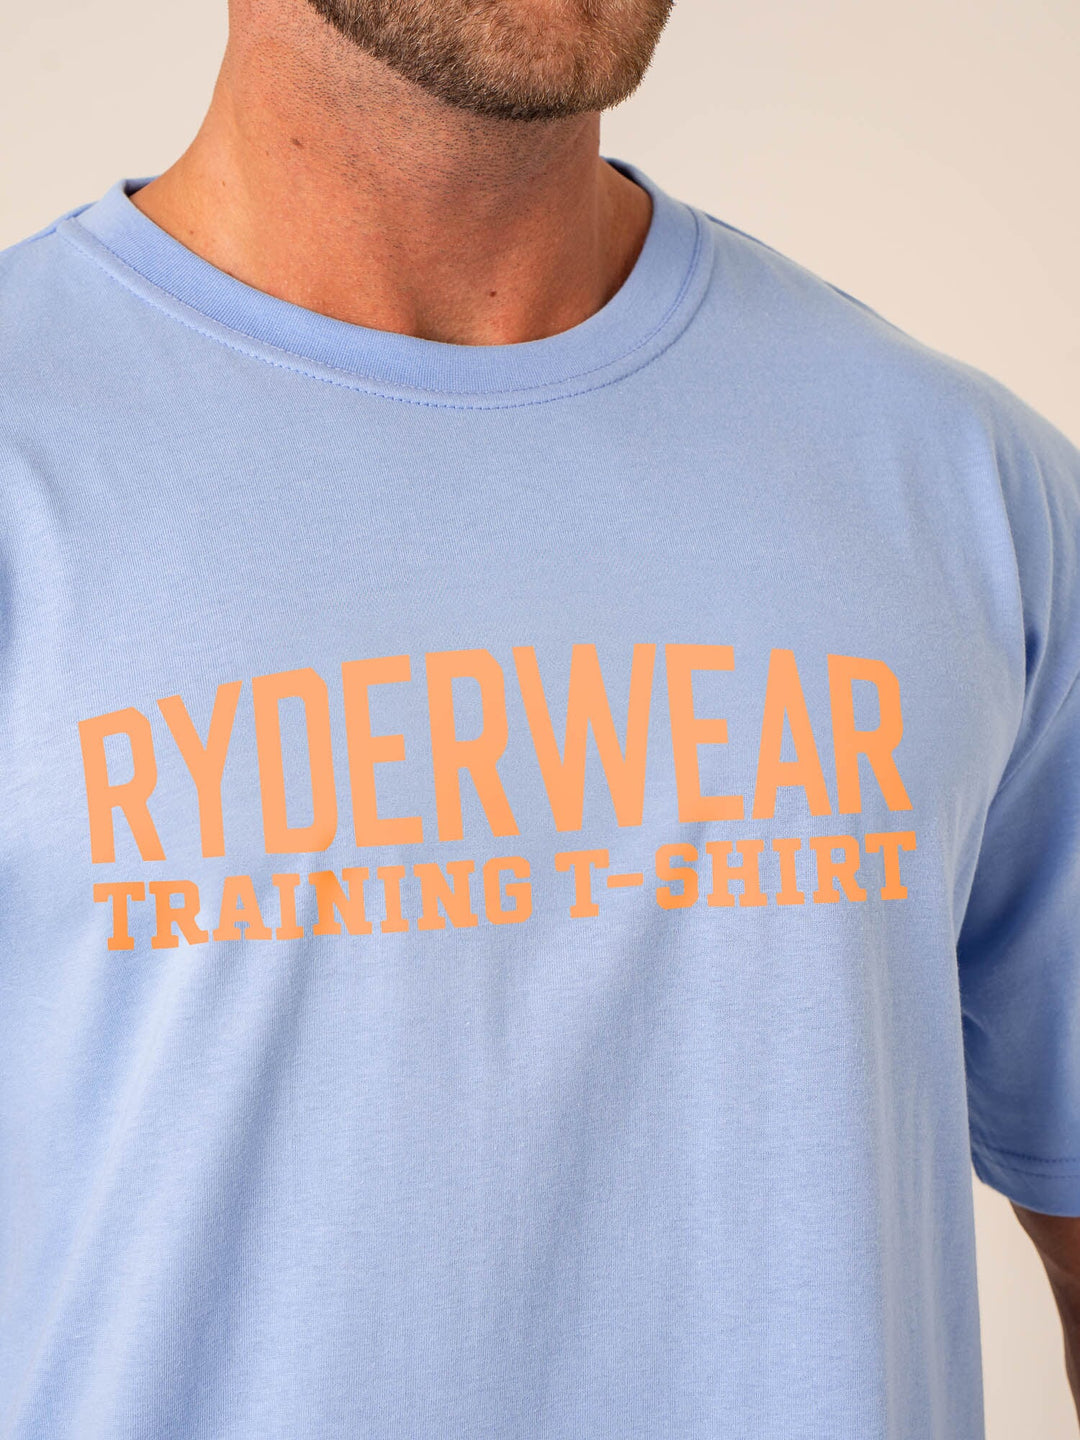 Ryderwear Training T-Shirt - Sky Blue Clothing Ryderwear 